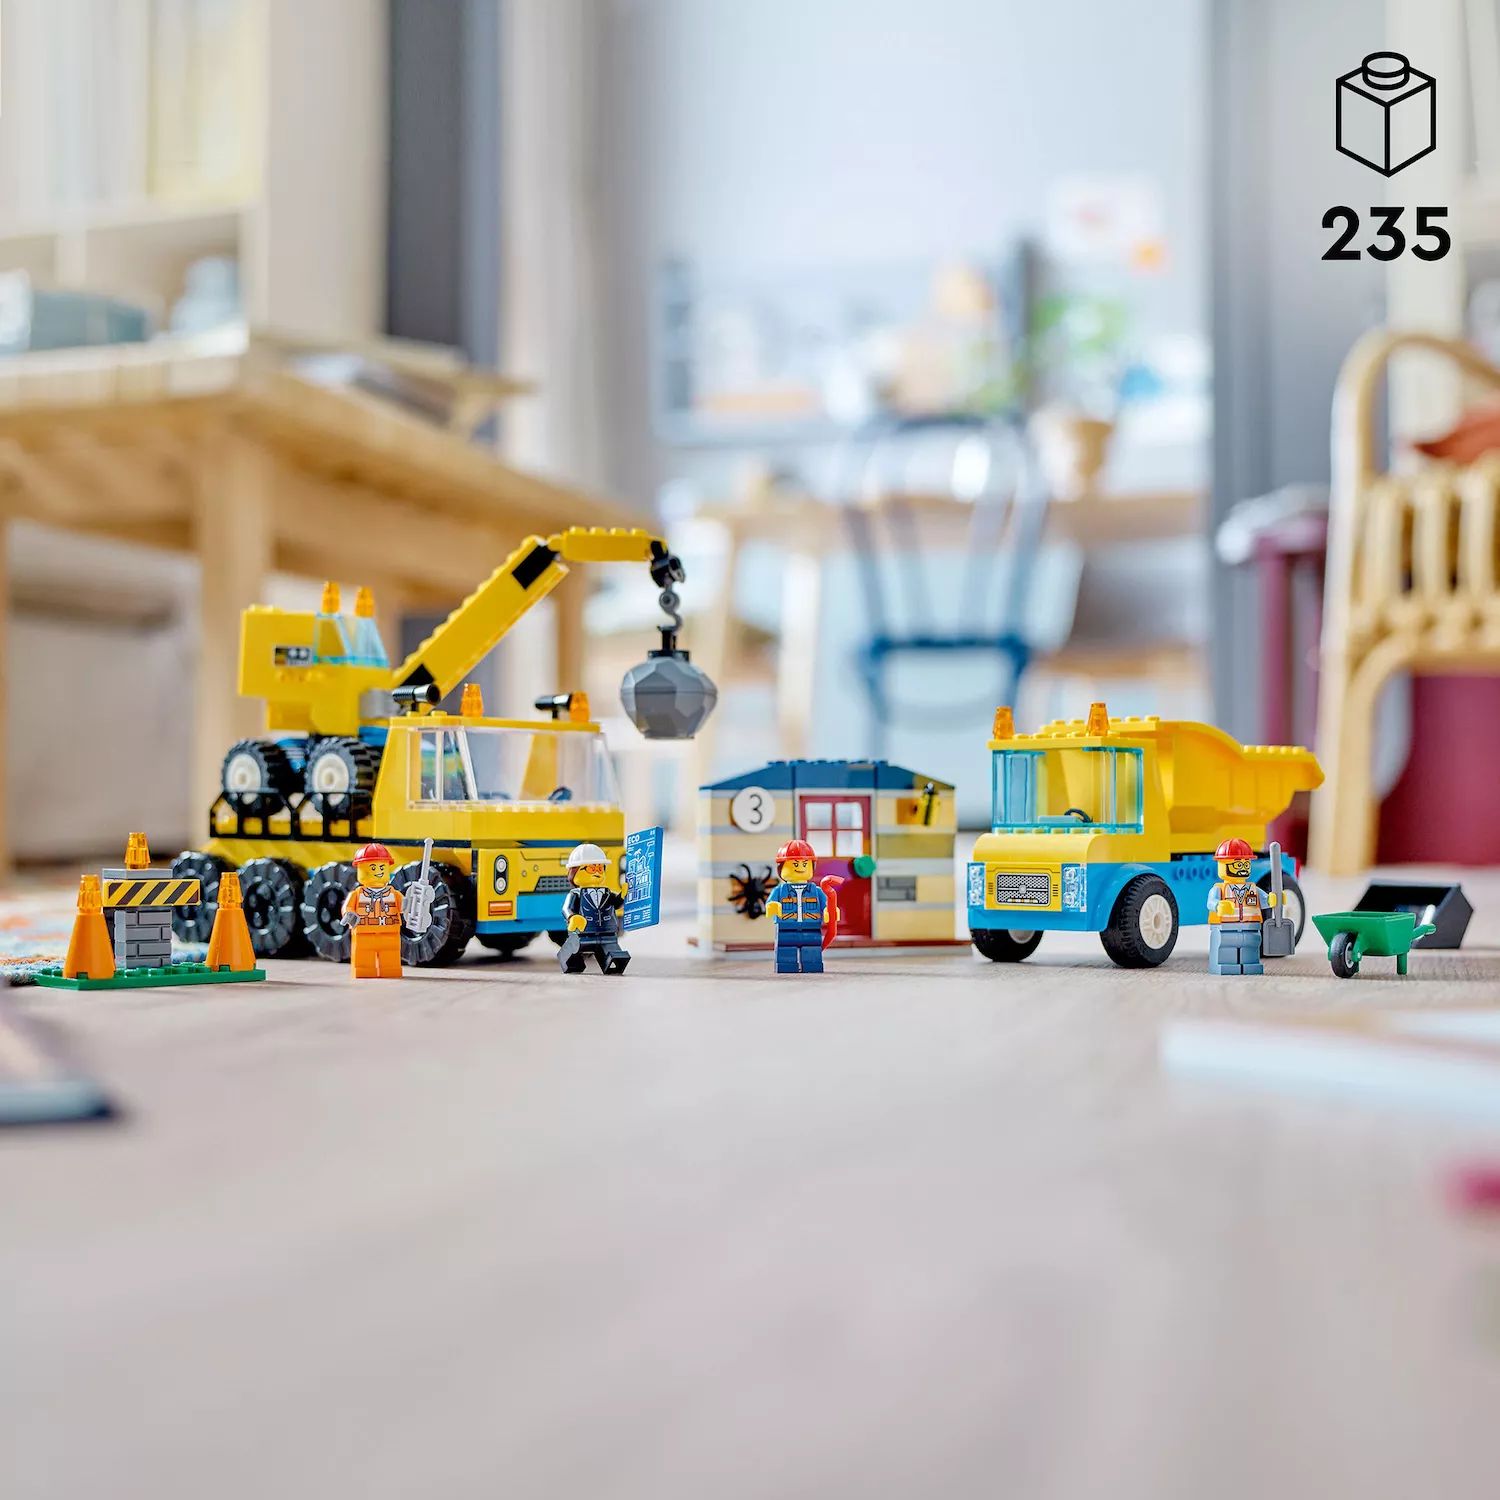 Набор строительных игрушек для малышей LEGO City Construction Trucks and Wrecking Ball Crane 60391 (235 деталей) LEGO конструктор lego city trucks and wrecking ball crane 60391 235 деталей